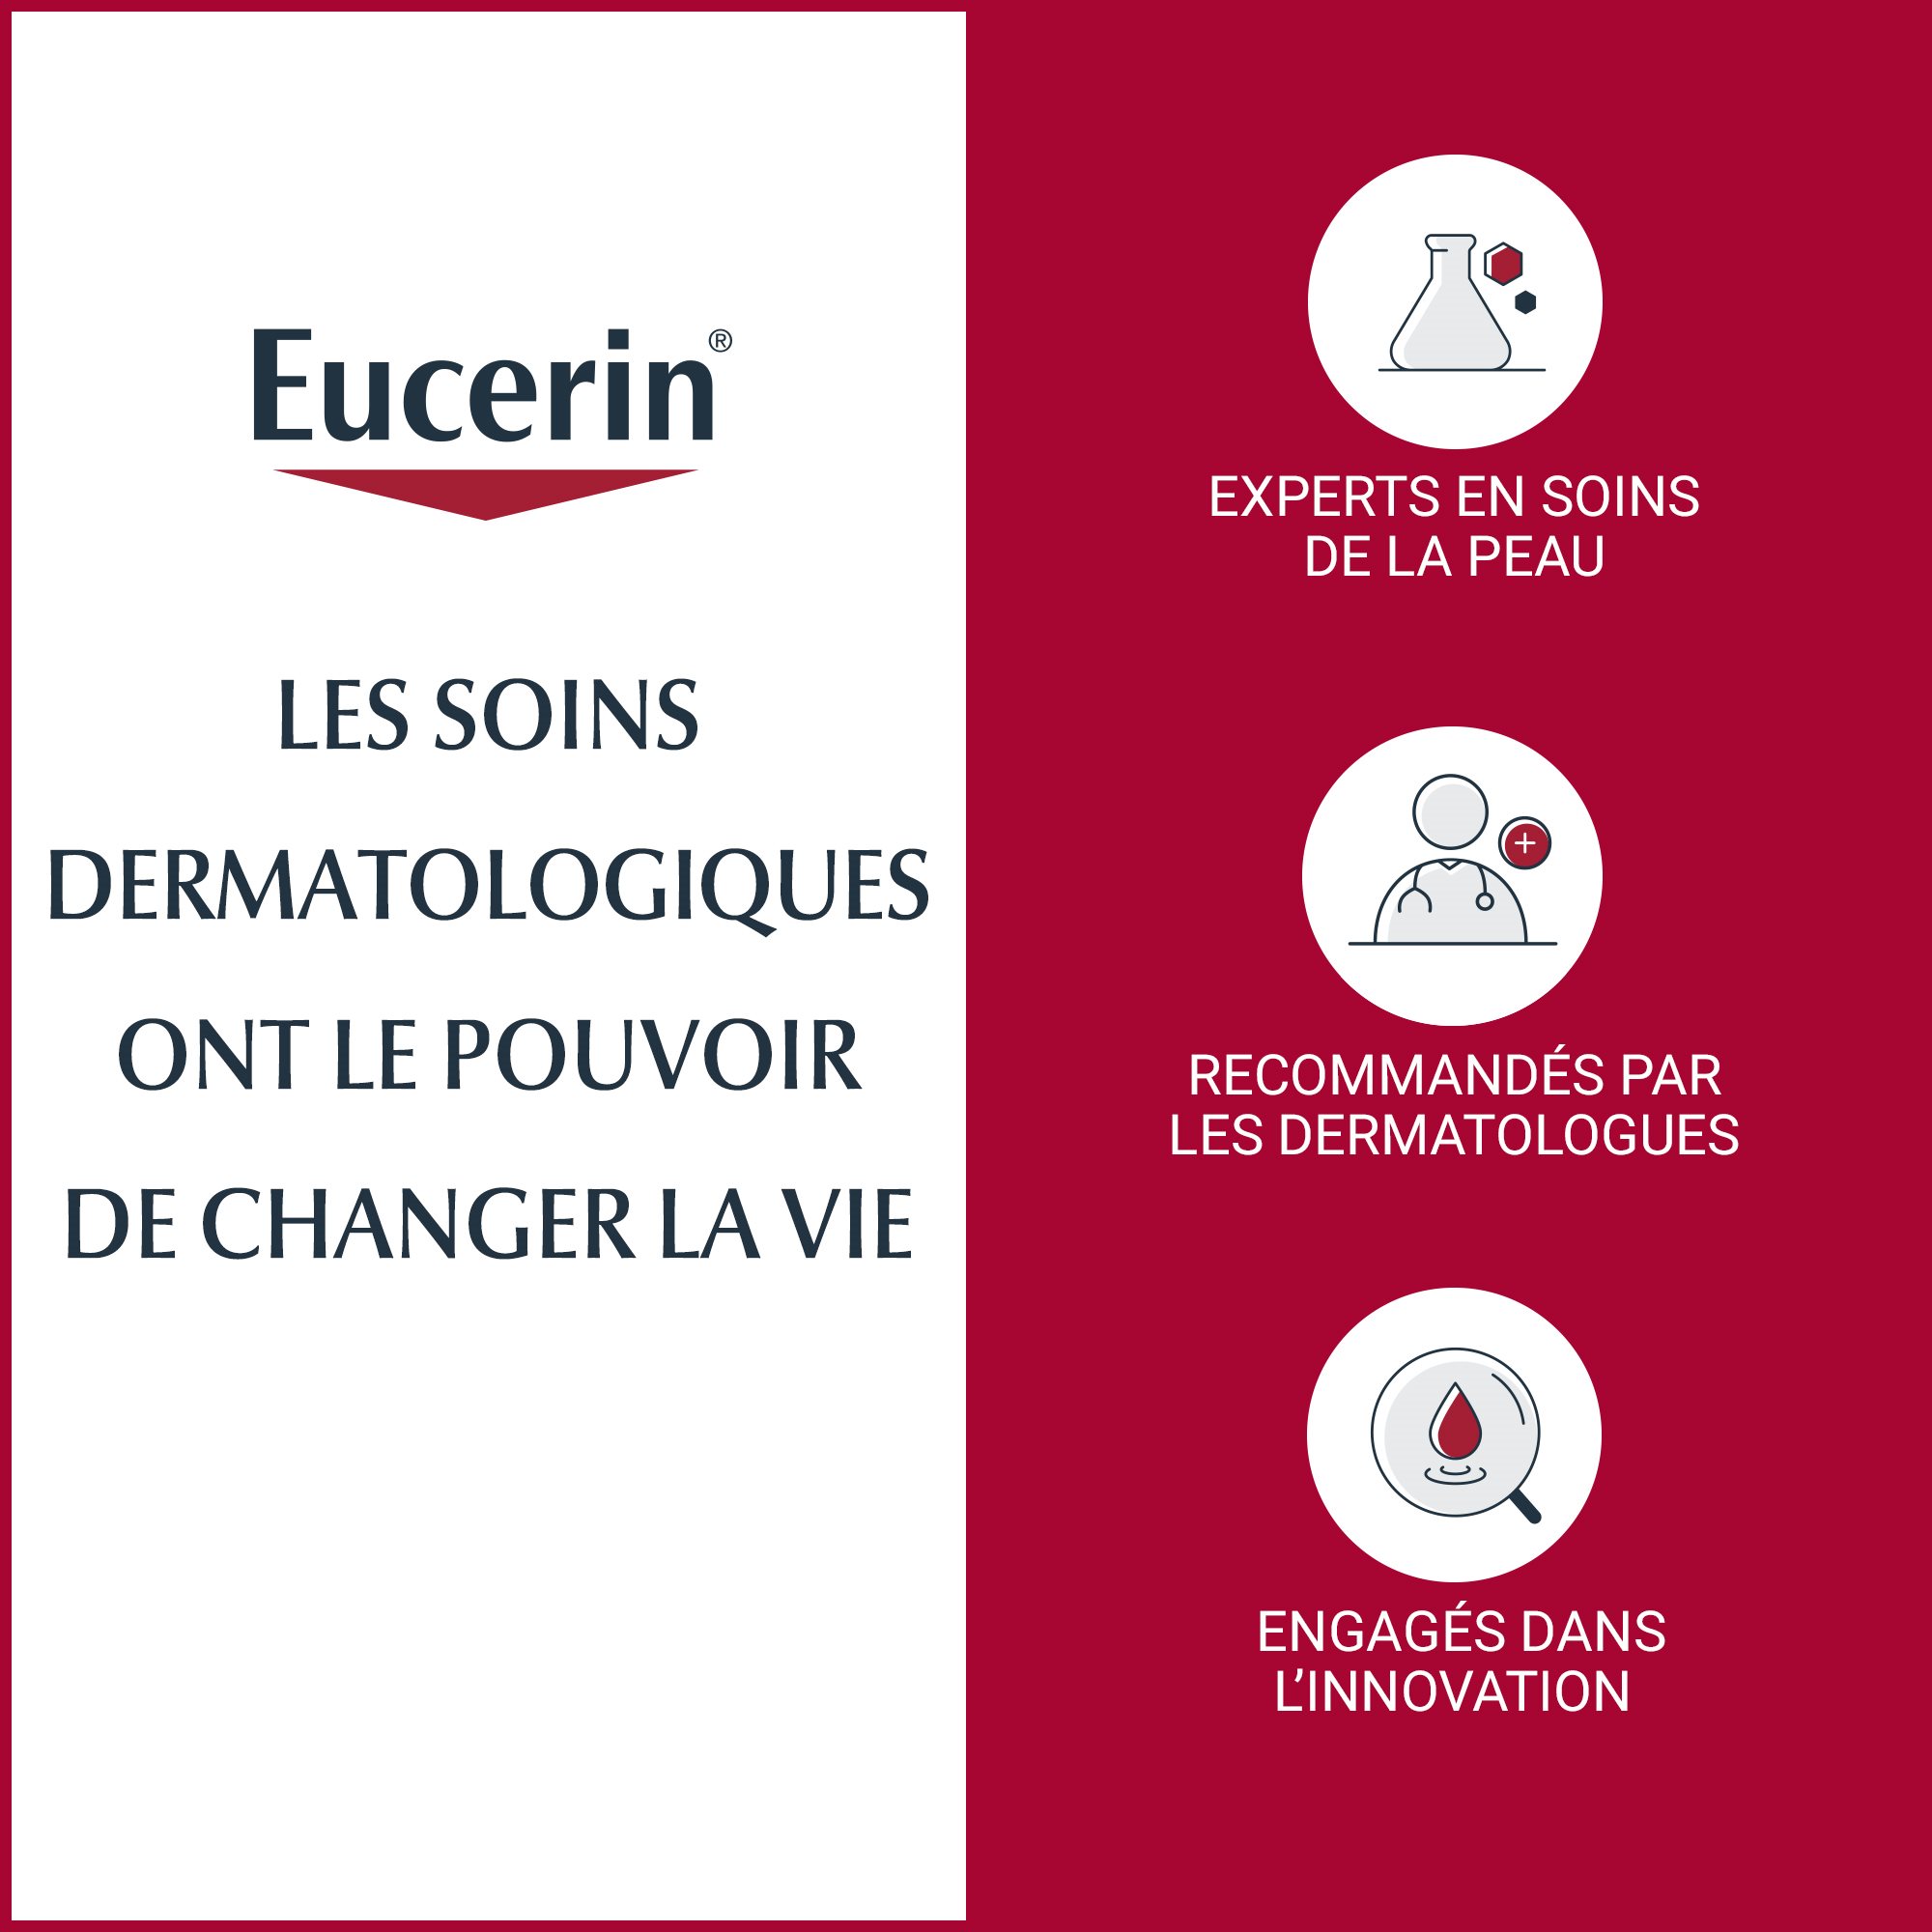 Infos dermatologiques sur la crème Eucerin pour peau sujette à l'eczéma, sur fond blanc et rouge.